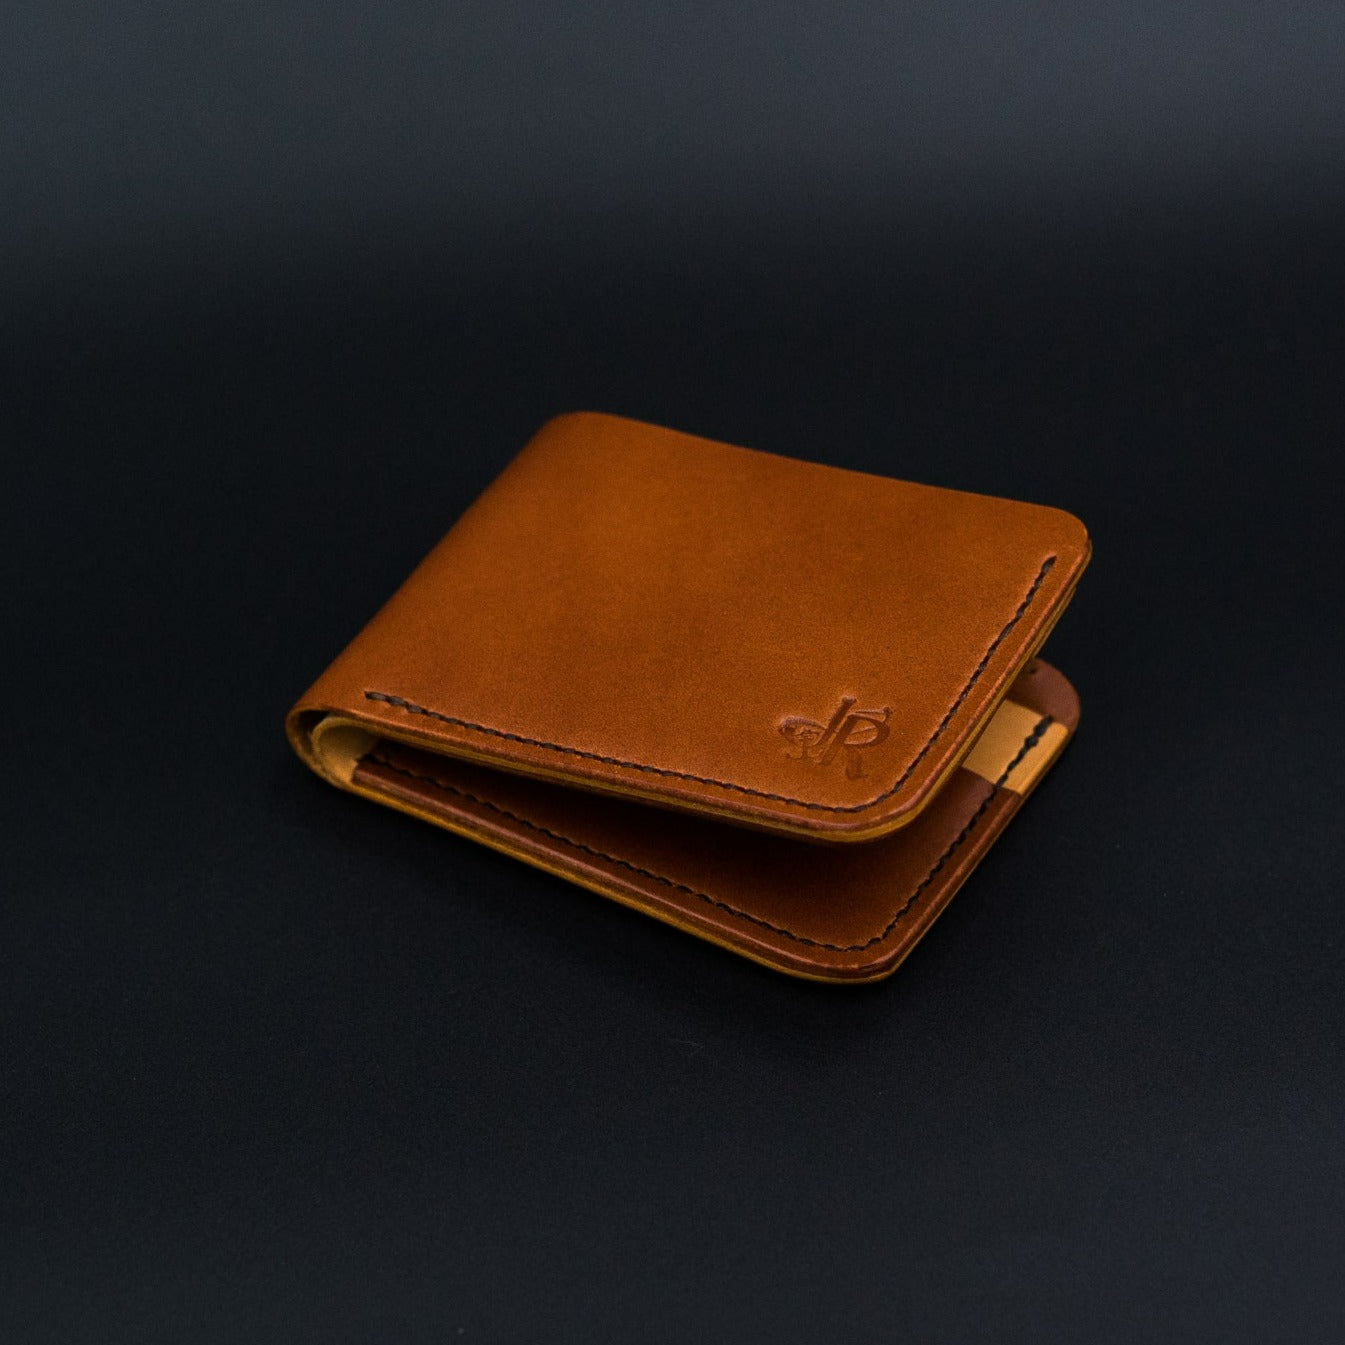 Brown Chestnut Leather Bifold Wallet